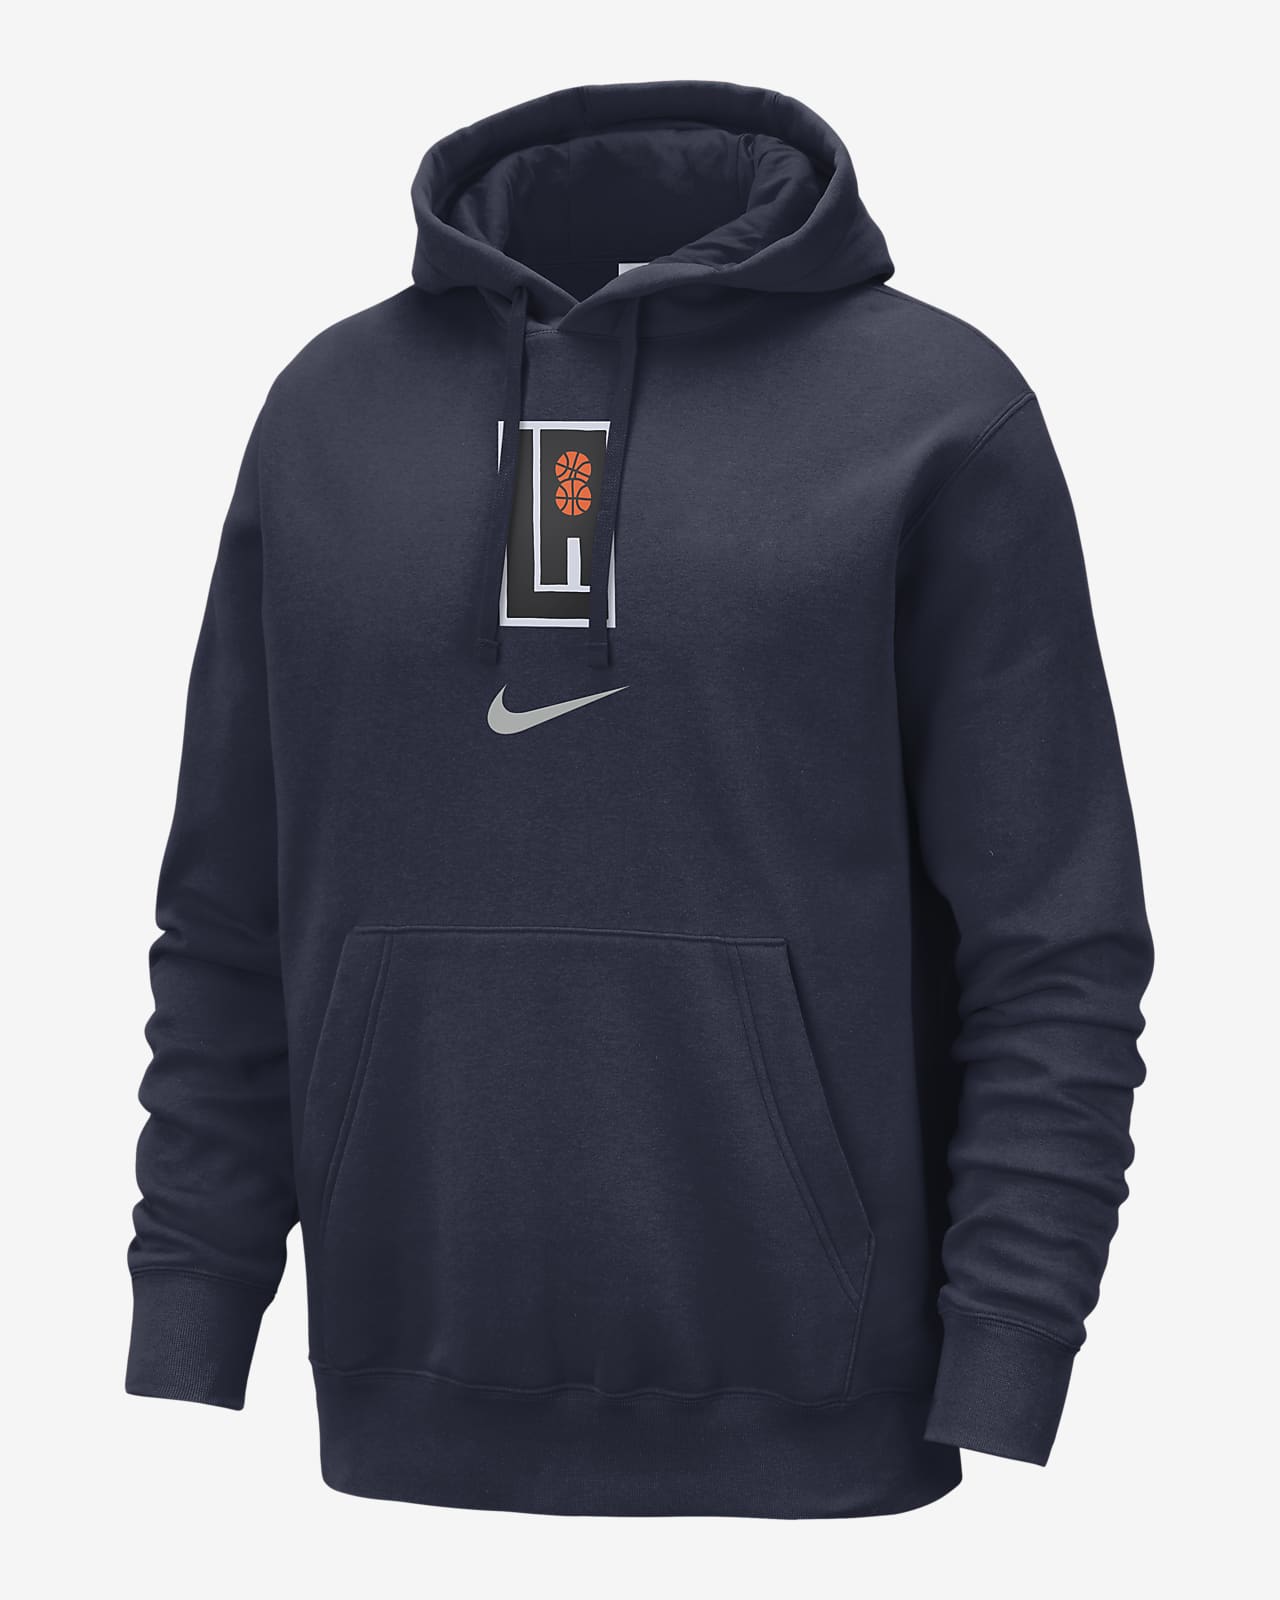 LA Clippers Club Fleece City Edition Dessuadora amb caputxa Nike NBA - Home